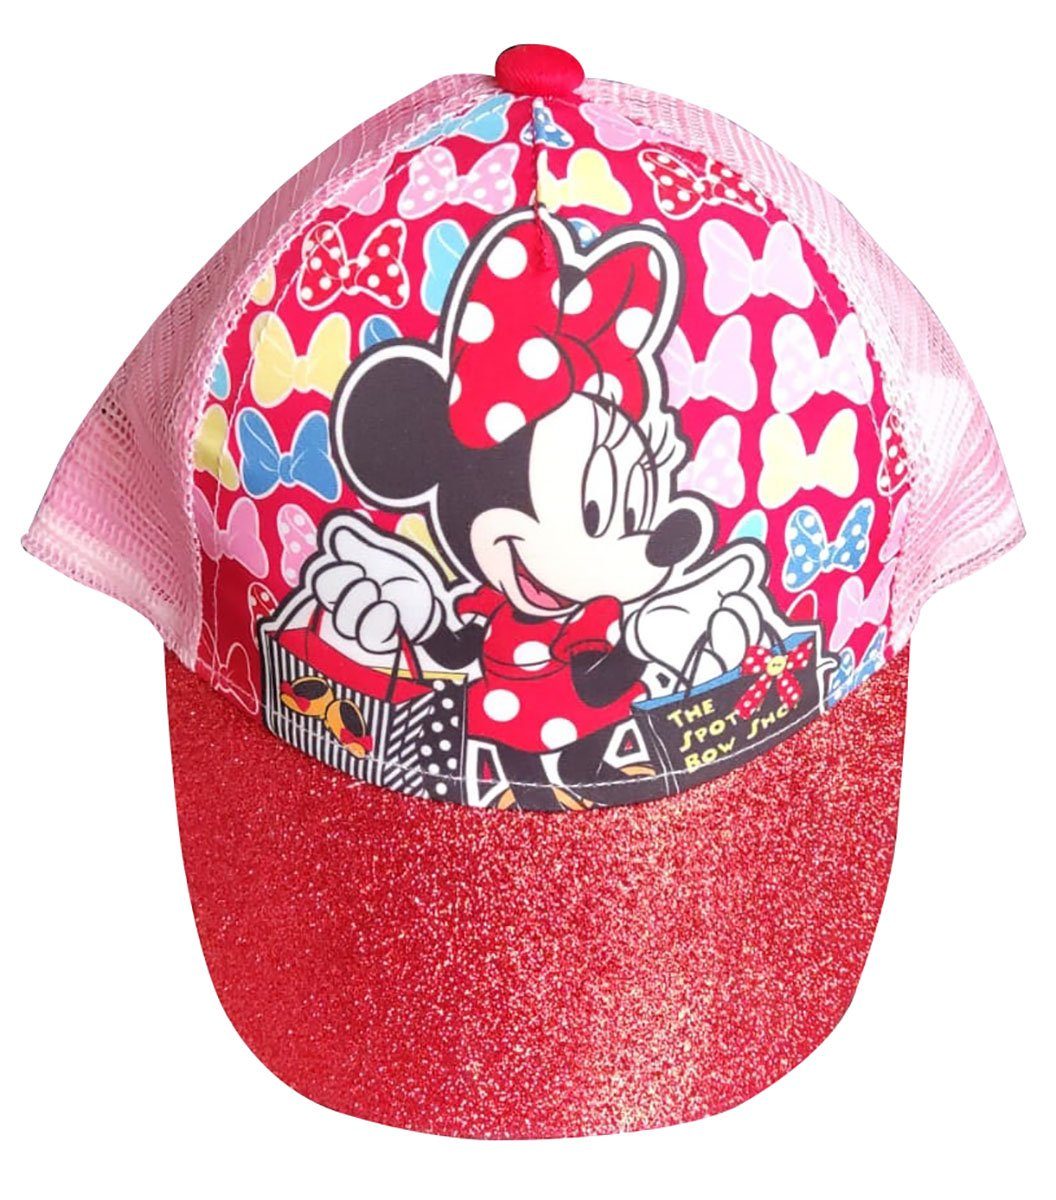 Sun City Schirmmütze Disney Cap Kappe Basecap Schirmmütze Minnie Maus m